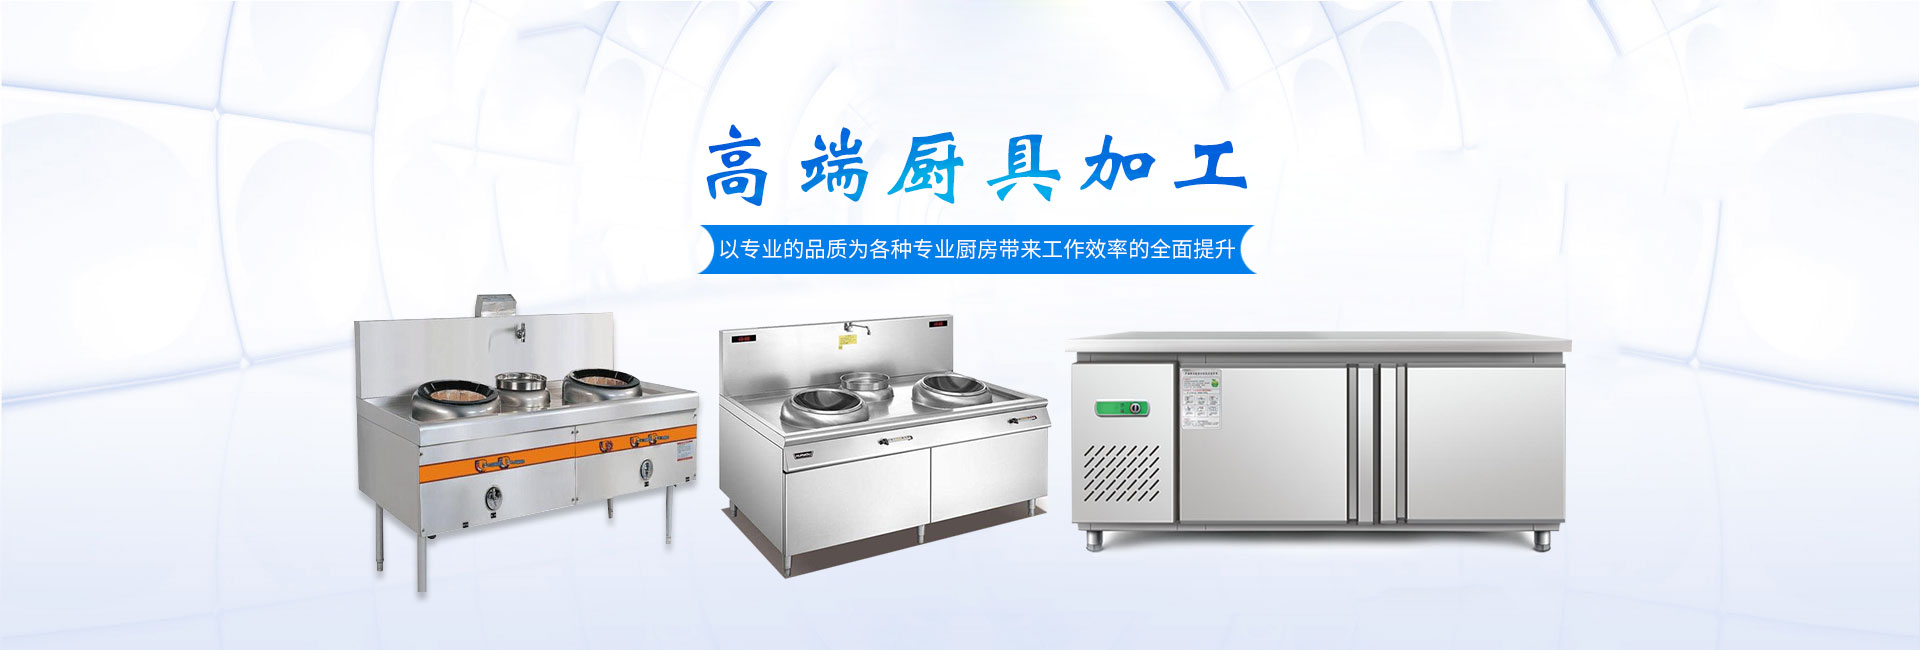 长沙福能达厨房设备有限公司_湖南厨具加工设备生产销售安装